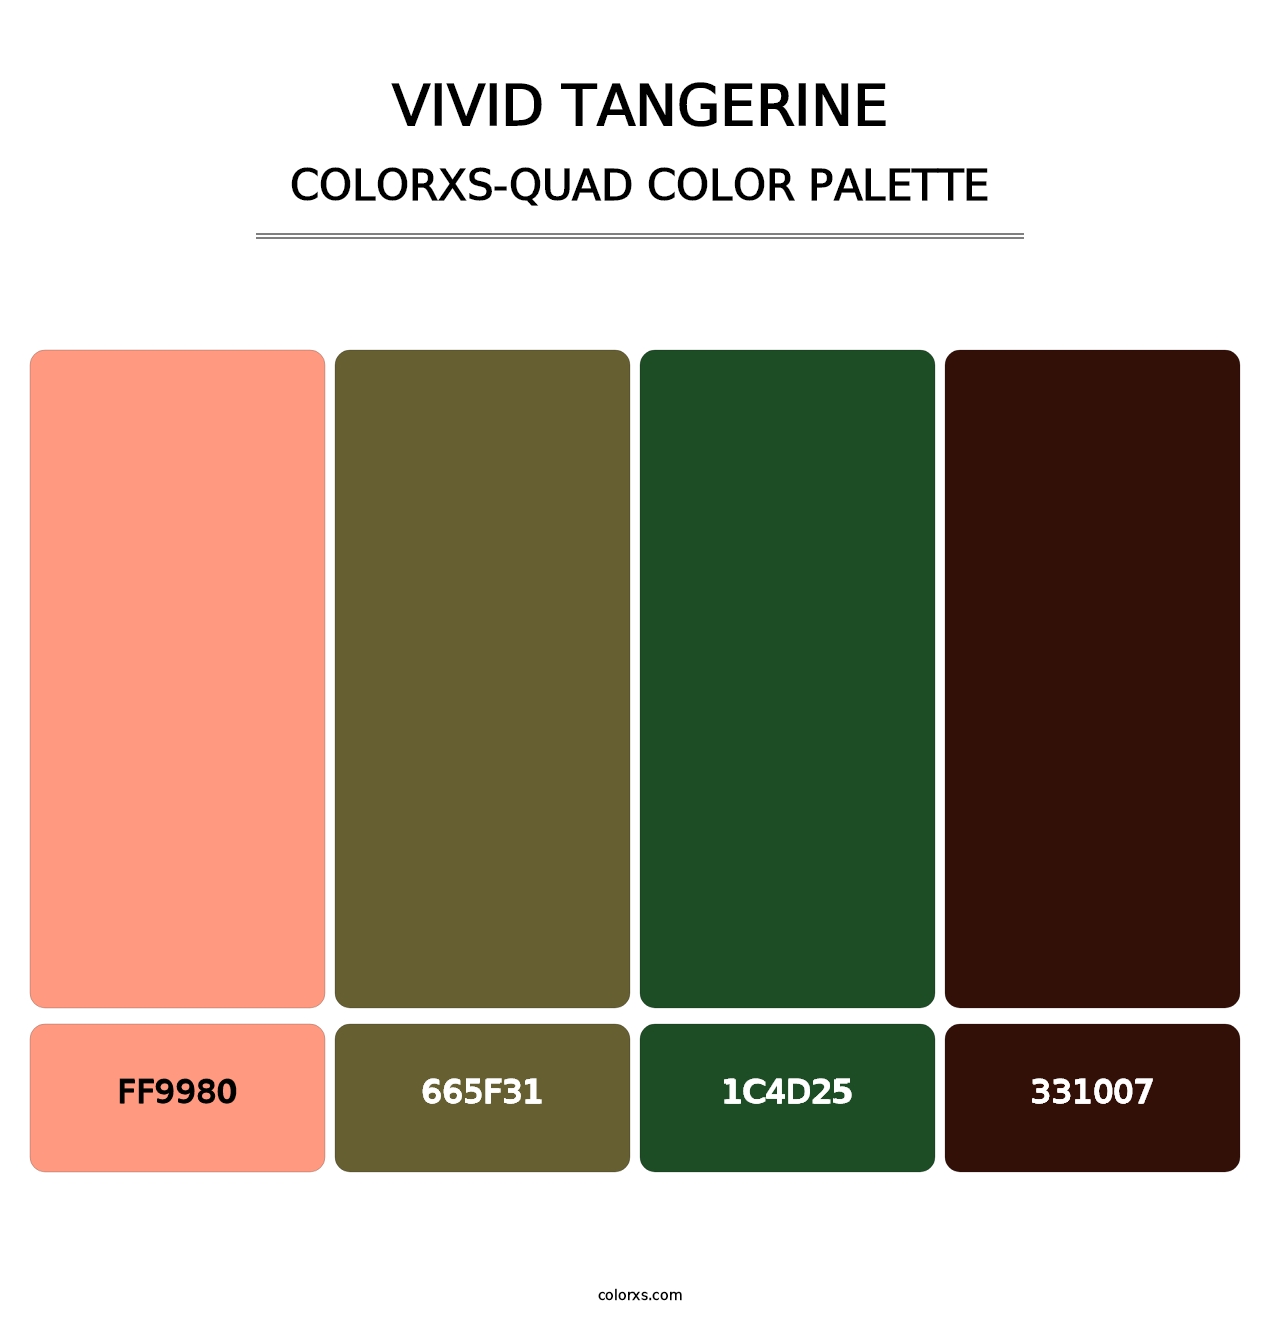 Vivid Tangerine - Colorxs Quad Palette